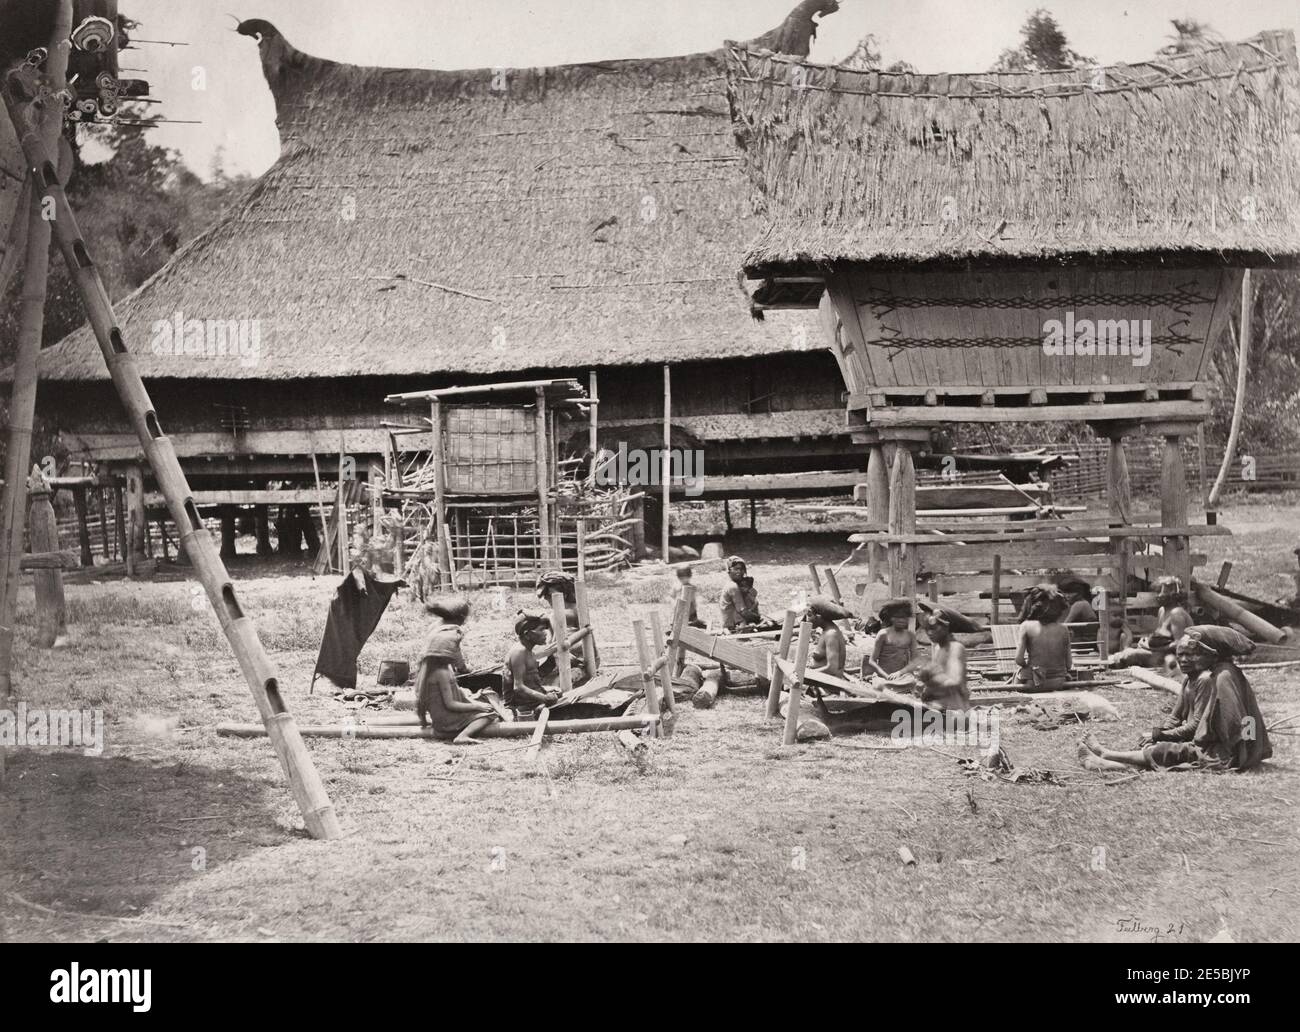 Fotografia d'annata del XIX secolo: Indie Orientali olandesi, Indonesia, un gruppo tribale indigeno di Batak, tessitori con telai. Fotografia di Kristen Feilberg. Foto Stock